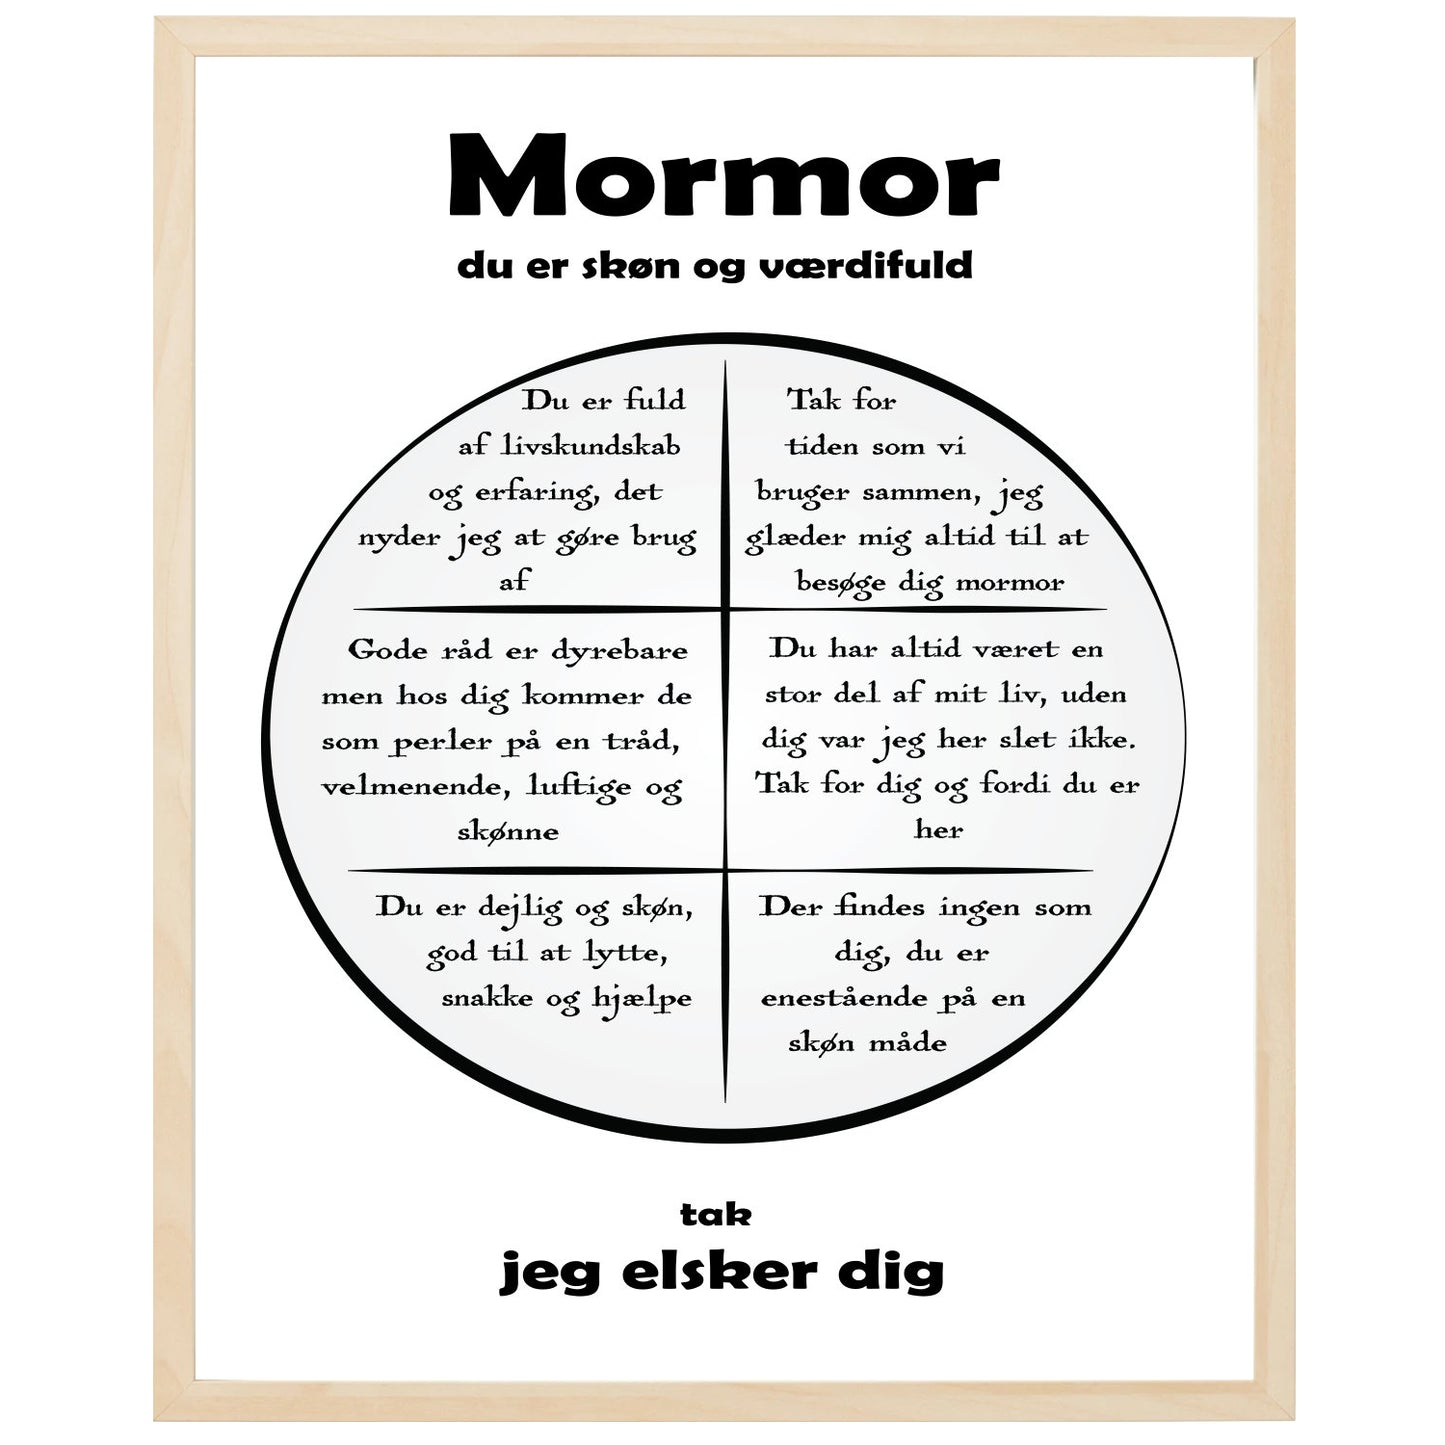 En plakat med overskriften Mormor, en rustik cirkel og indeni cirklen mange positive sætninger som beskriver en Mormor